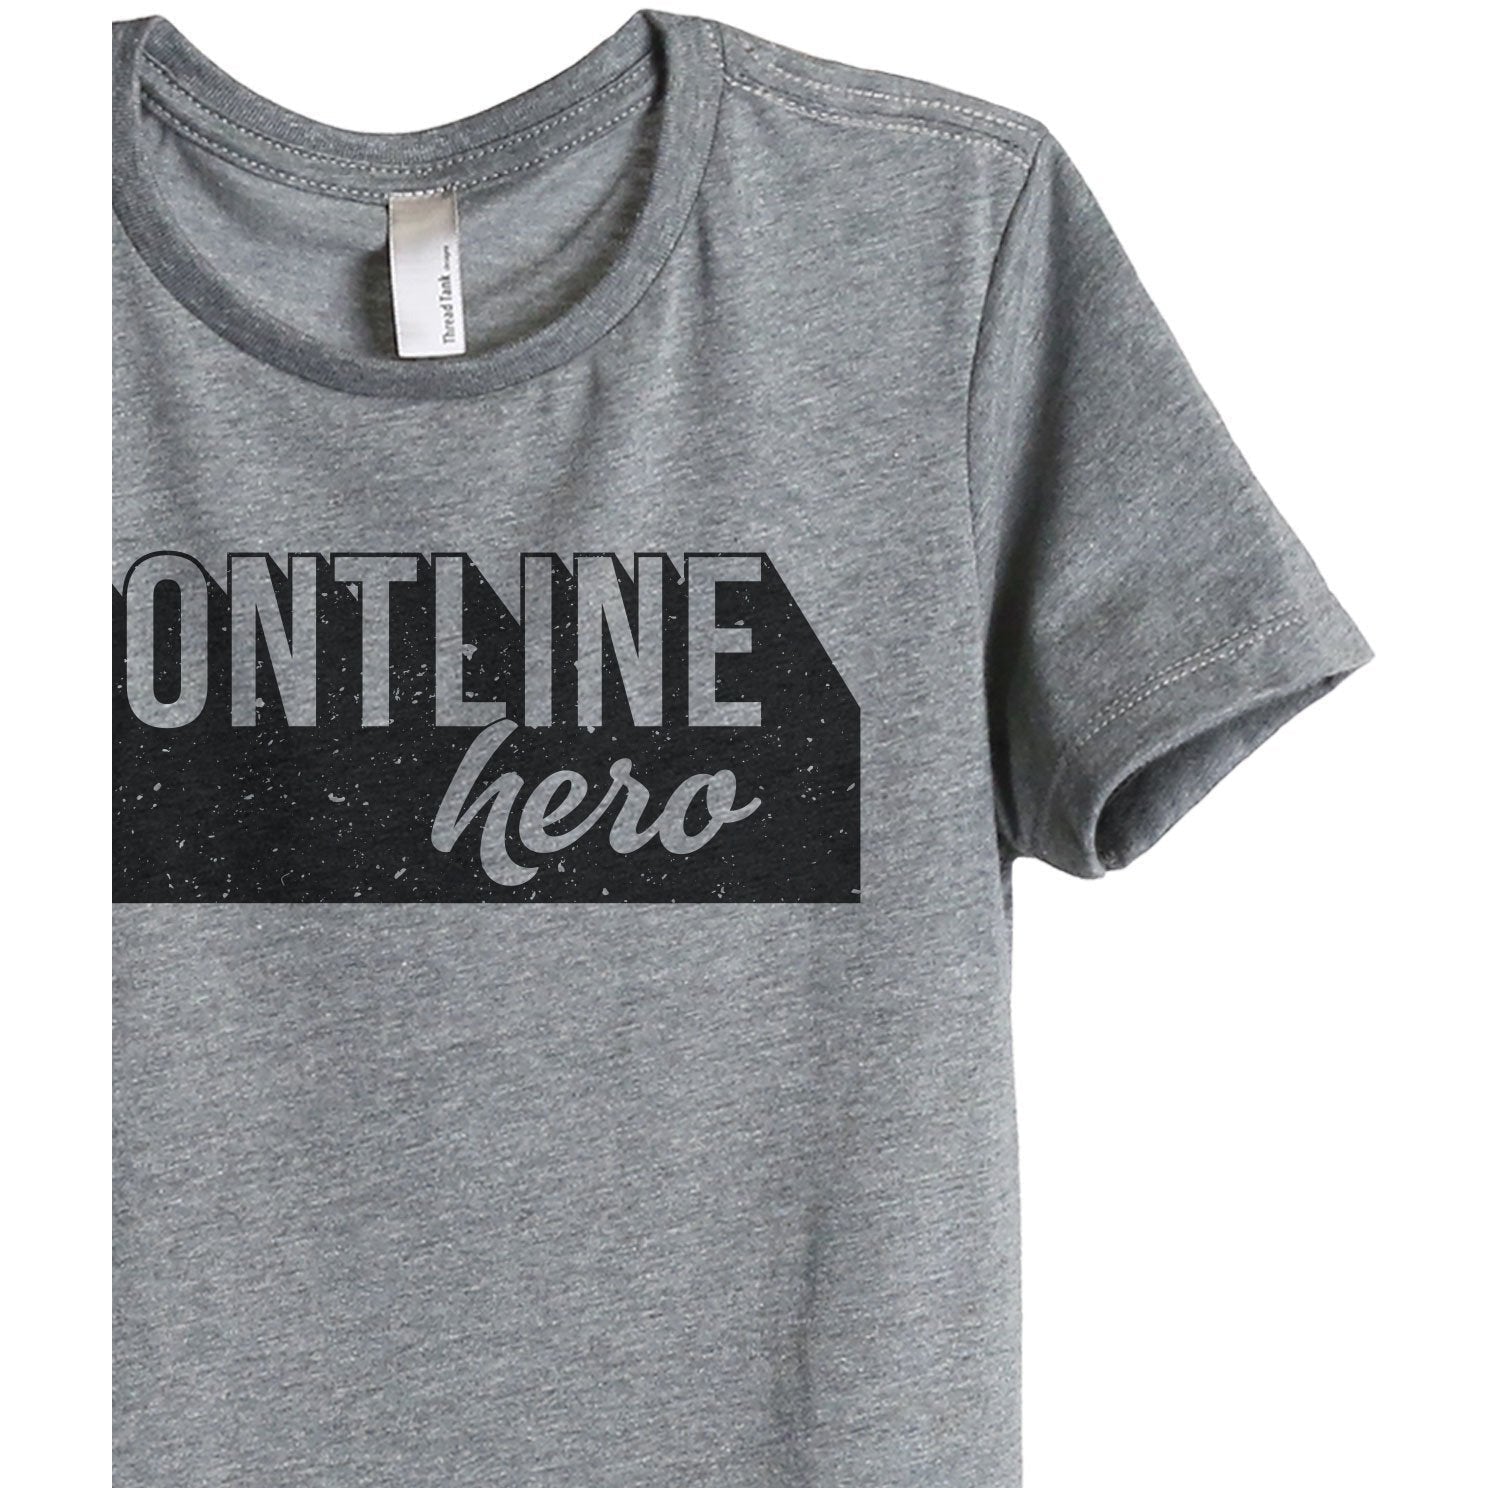 Frontline Hero Women's Relaxed Crewneck T-Shirt Top Tee Heather Grey Zoom Details
